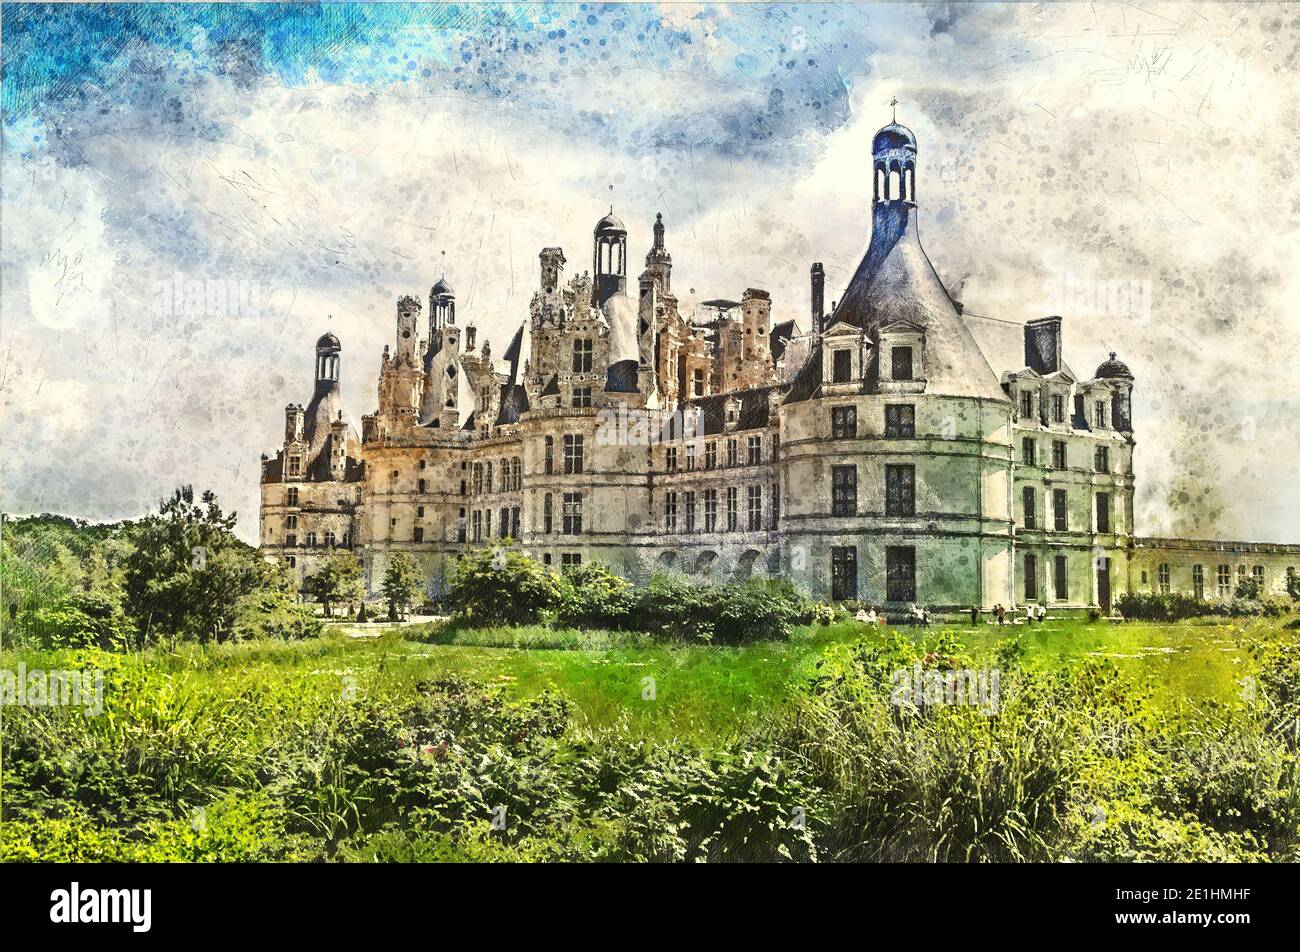 Beau vieux château de chambord - vallée de la Loire. Illustration de style aquarelle. Banque D'Images